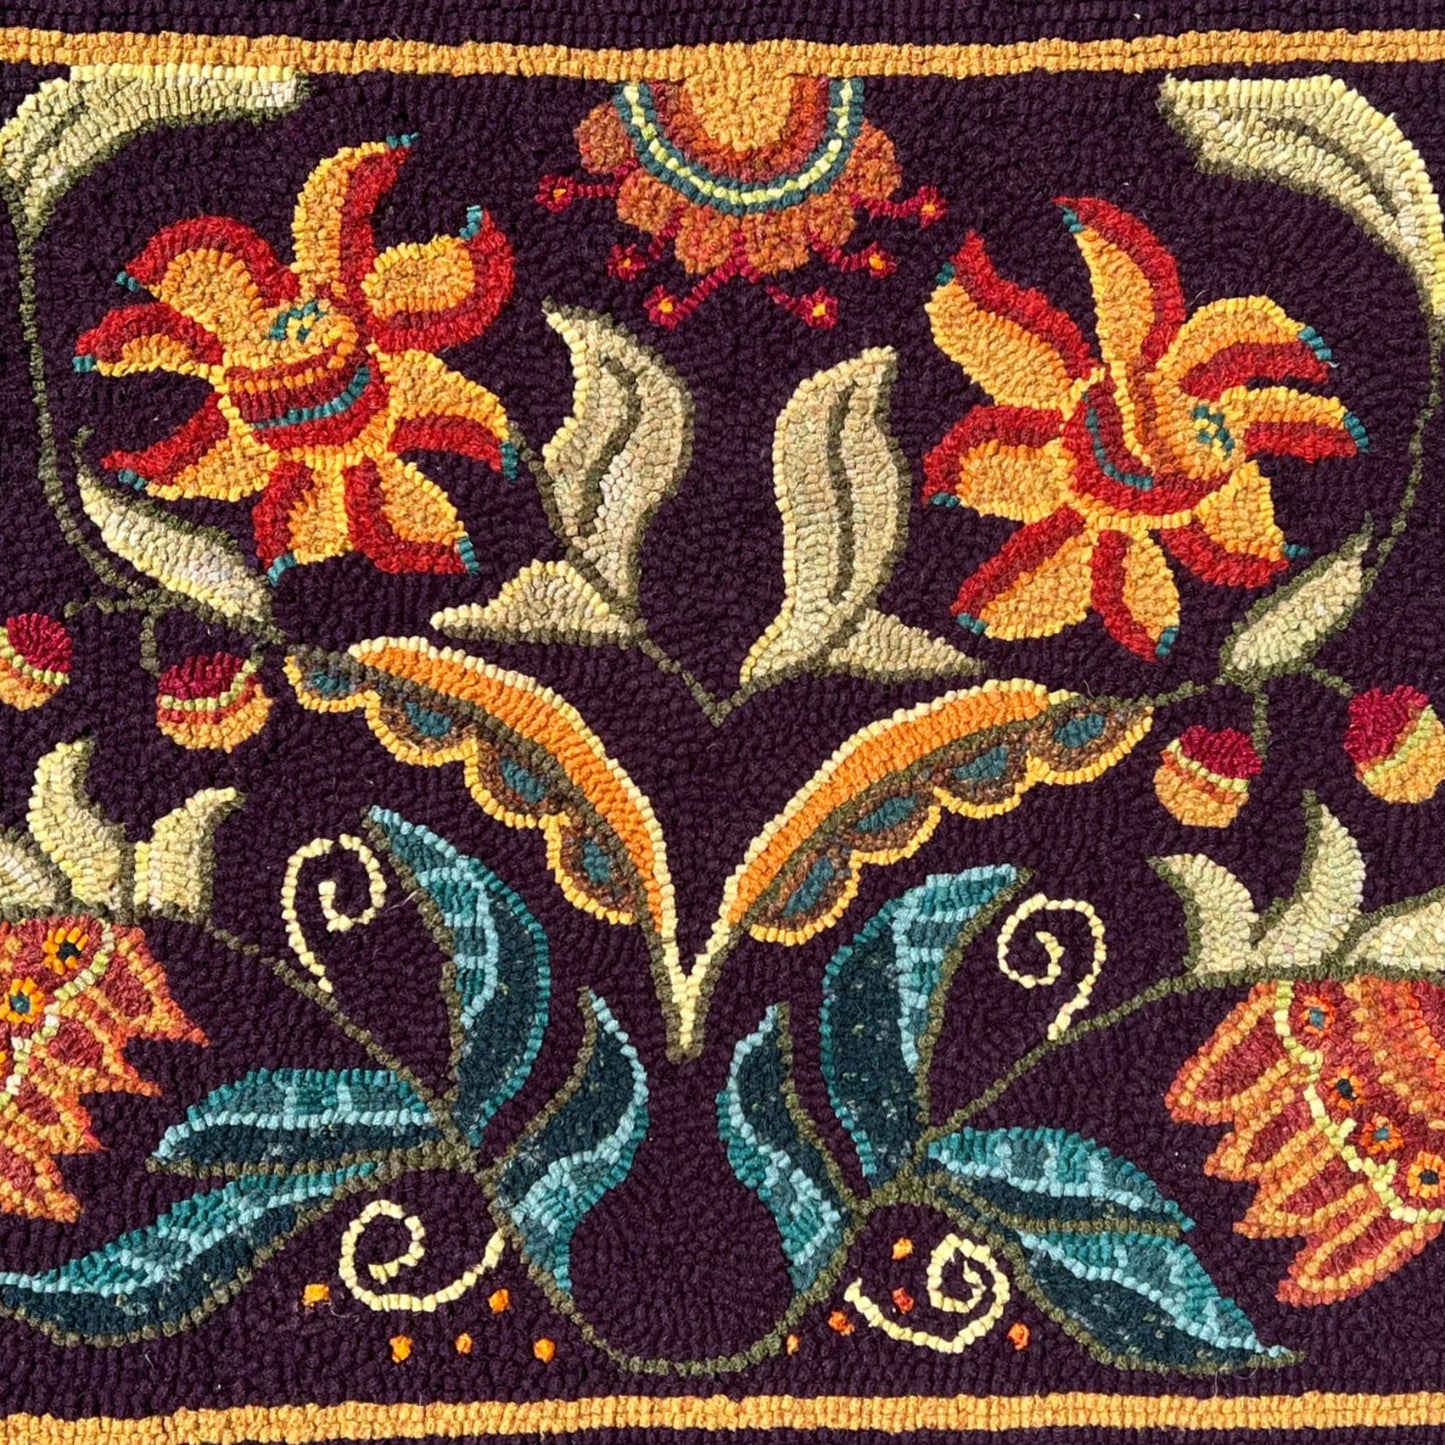 Awakening 1428 -Rug Hooking PDF Digital Download Mirrored Floral Pattern, by Orphaned Wool